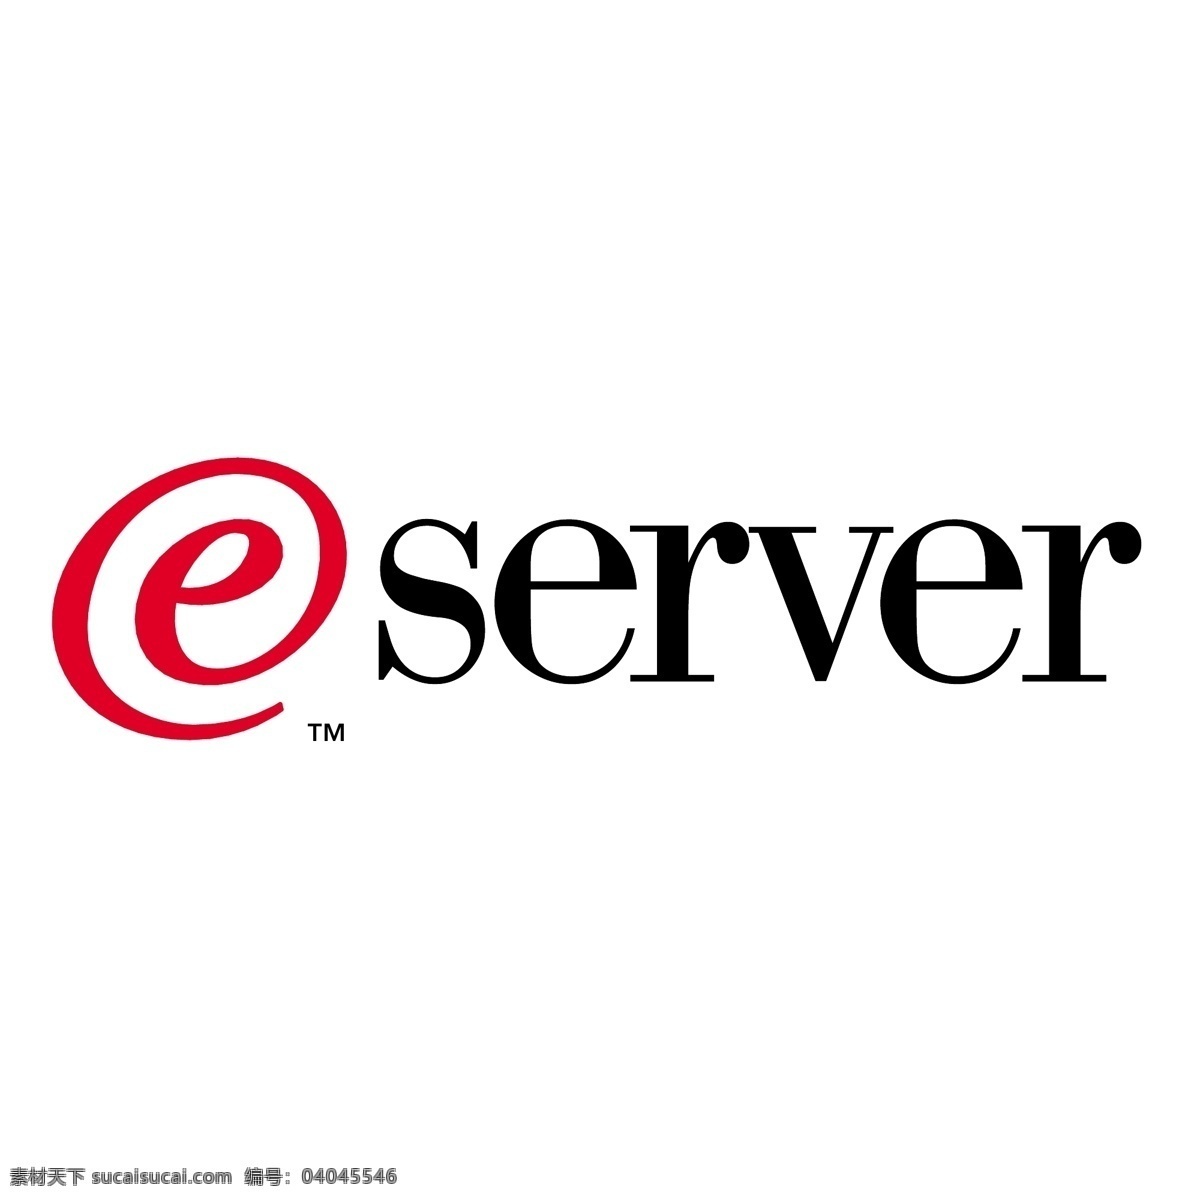 e服务器 服务器 免费 矢量 插画 图标 图形 sql 艺术 载体 载体的标志 微软sql server 标志 机架 计算机 网络 建筑家居